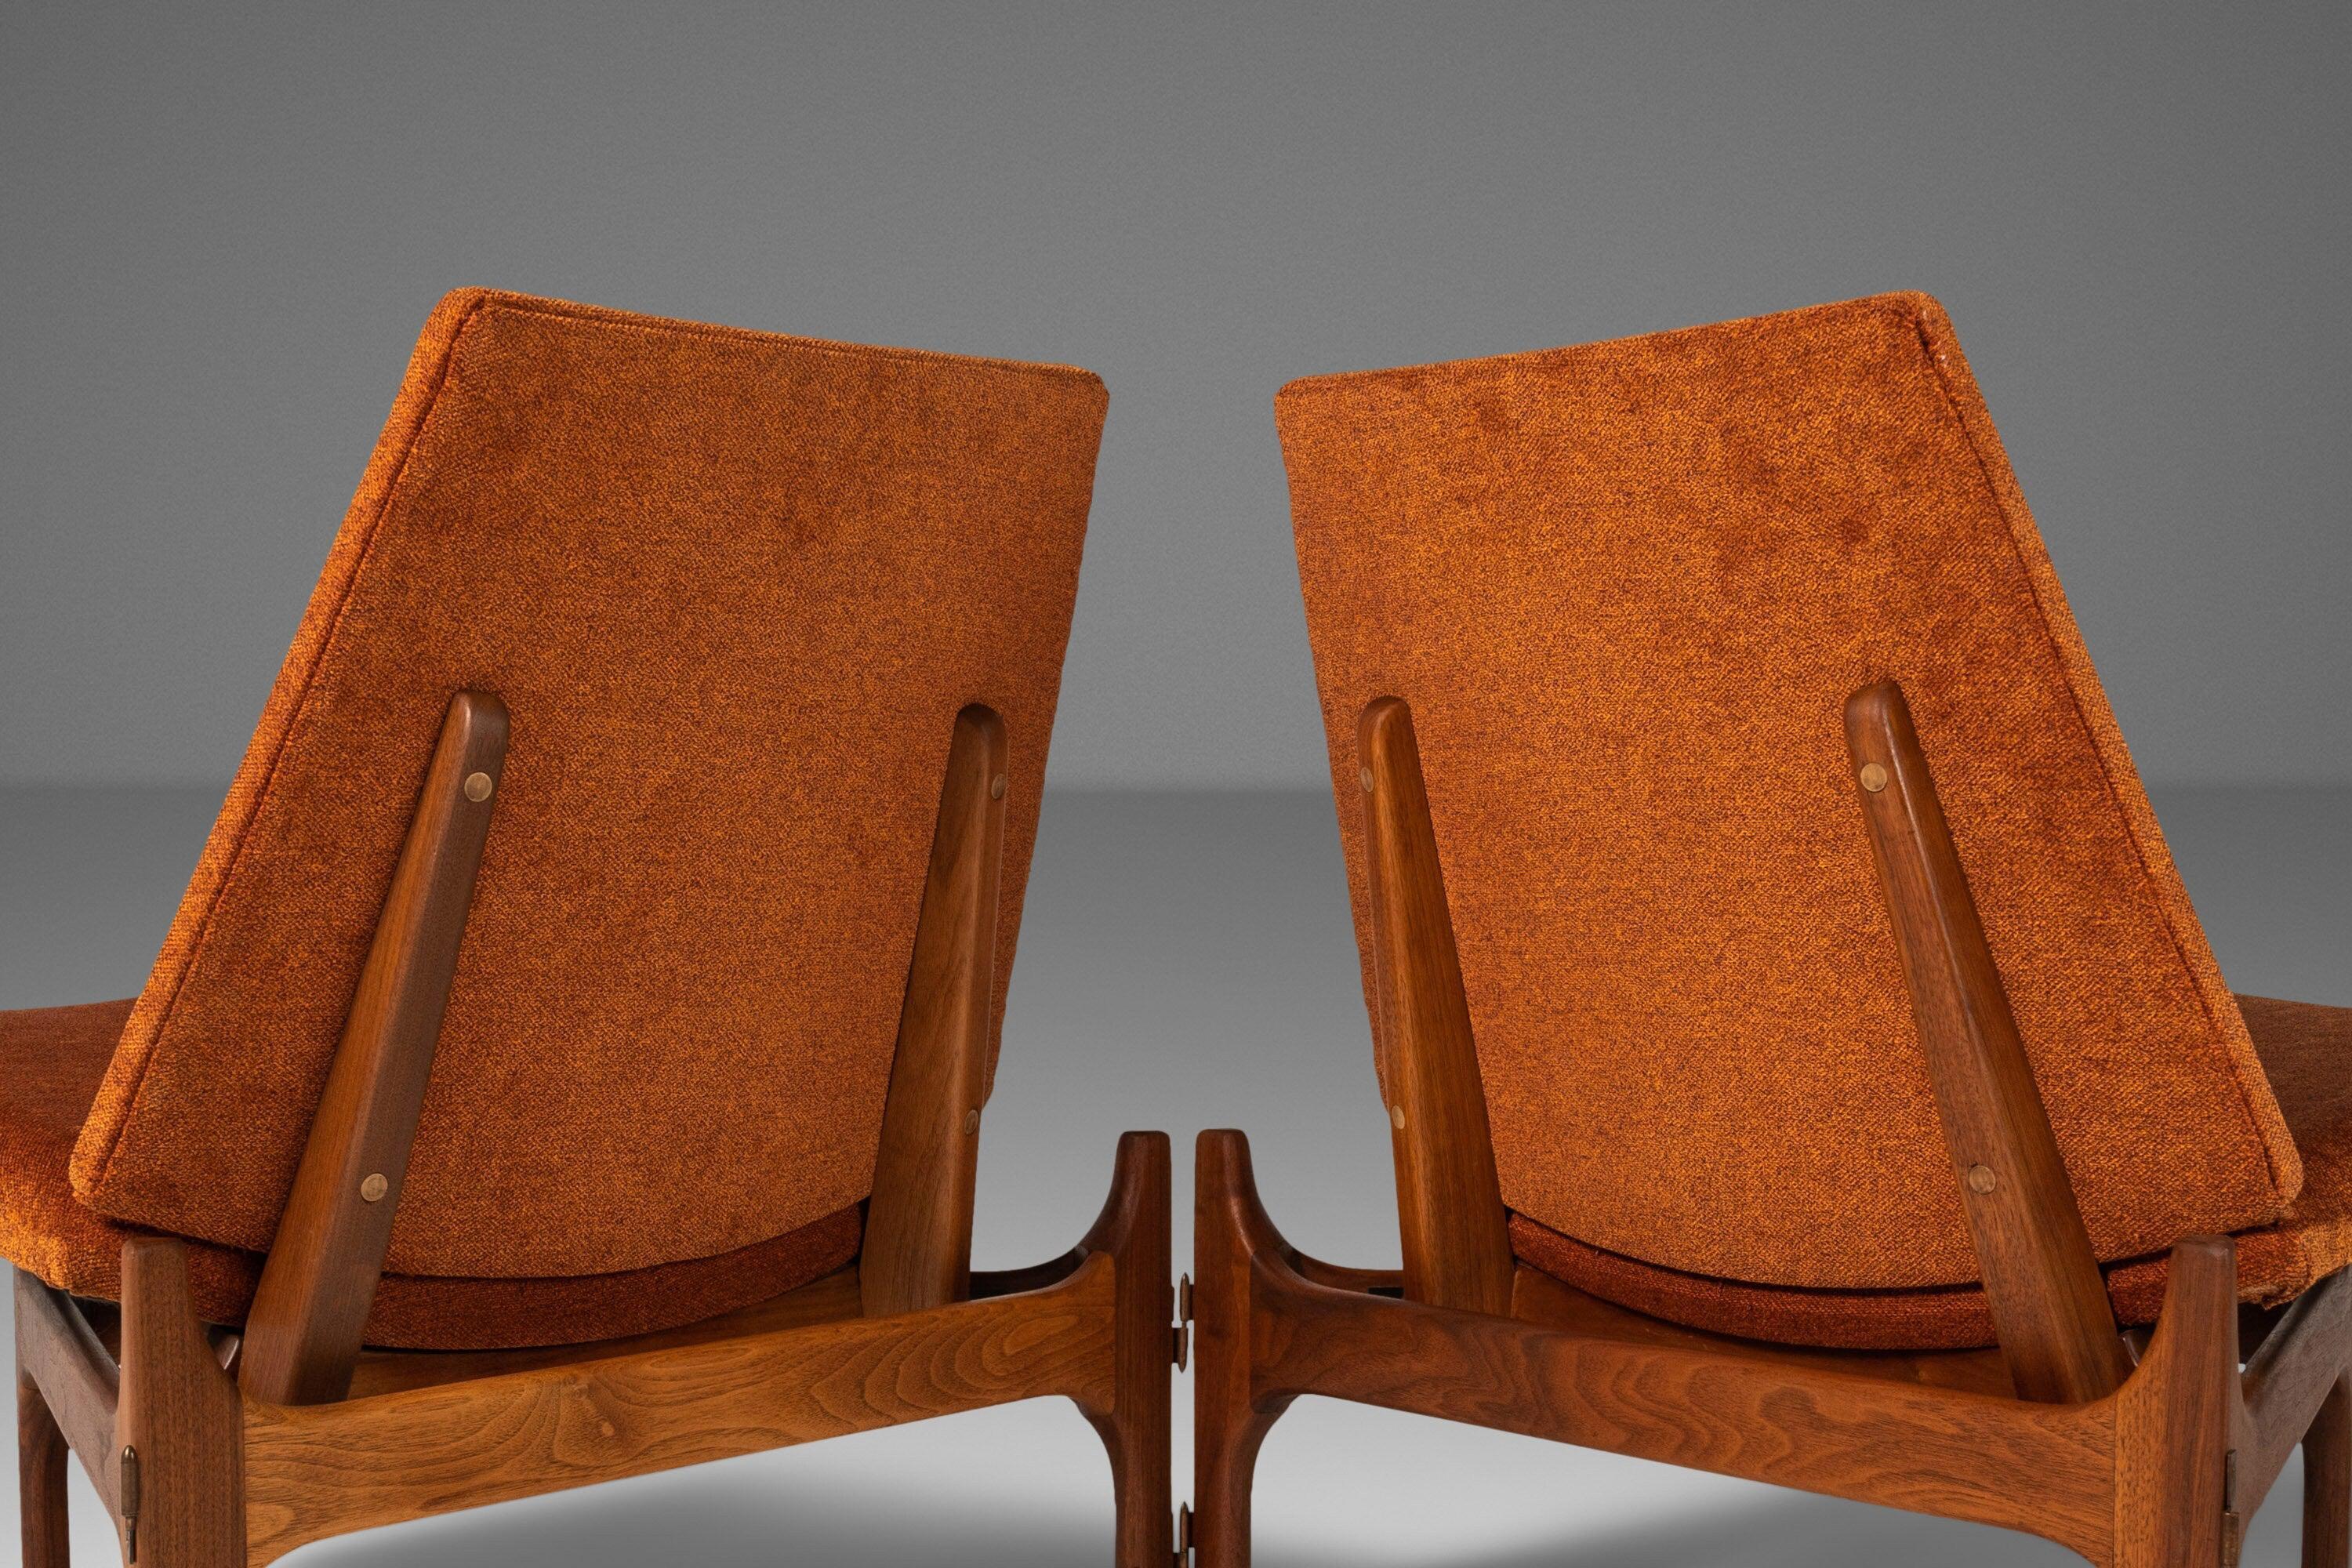 Il s'agit d'un ensemble ultra-rare de chaises longues à trois pieds conçu par John Keal pour Brown Saltman. Les chaises sont équipées de leur matériel d'origine et peuvent être reliées par des charnières pour former des sièges en tandem dans une